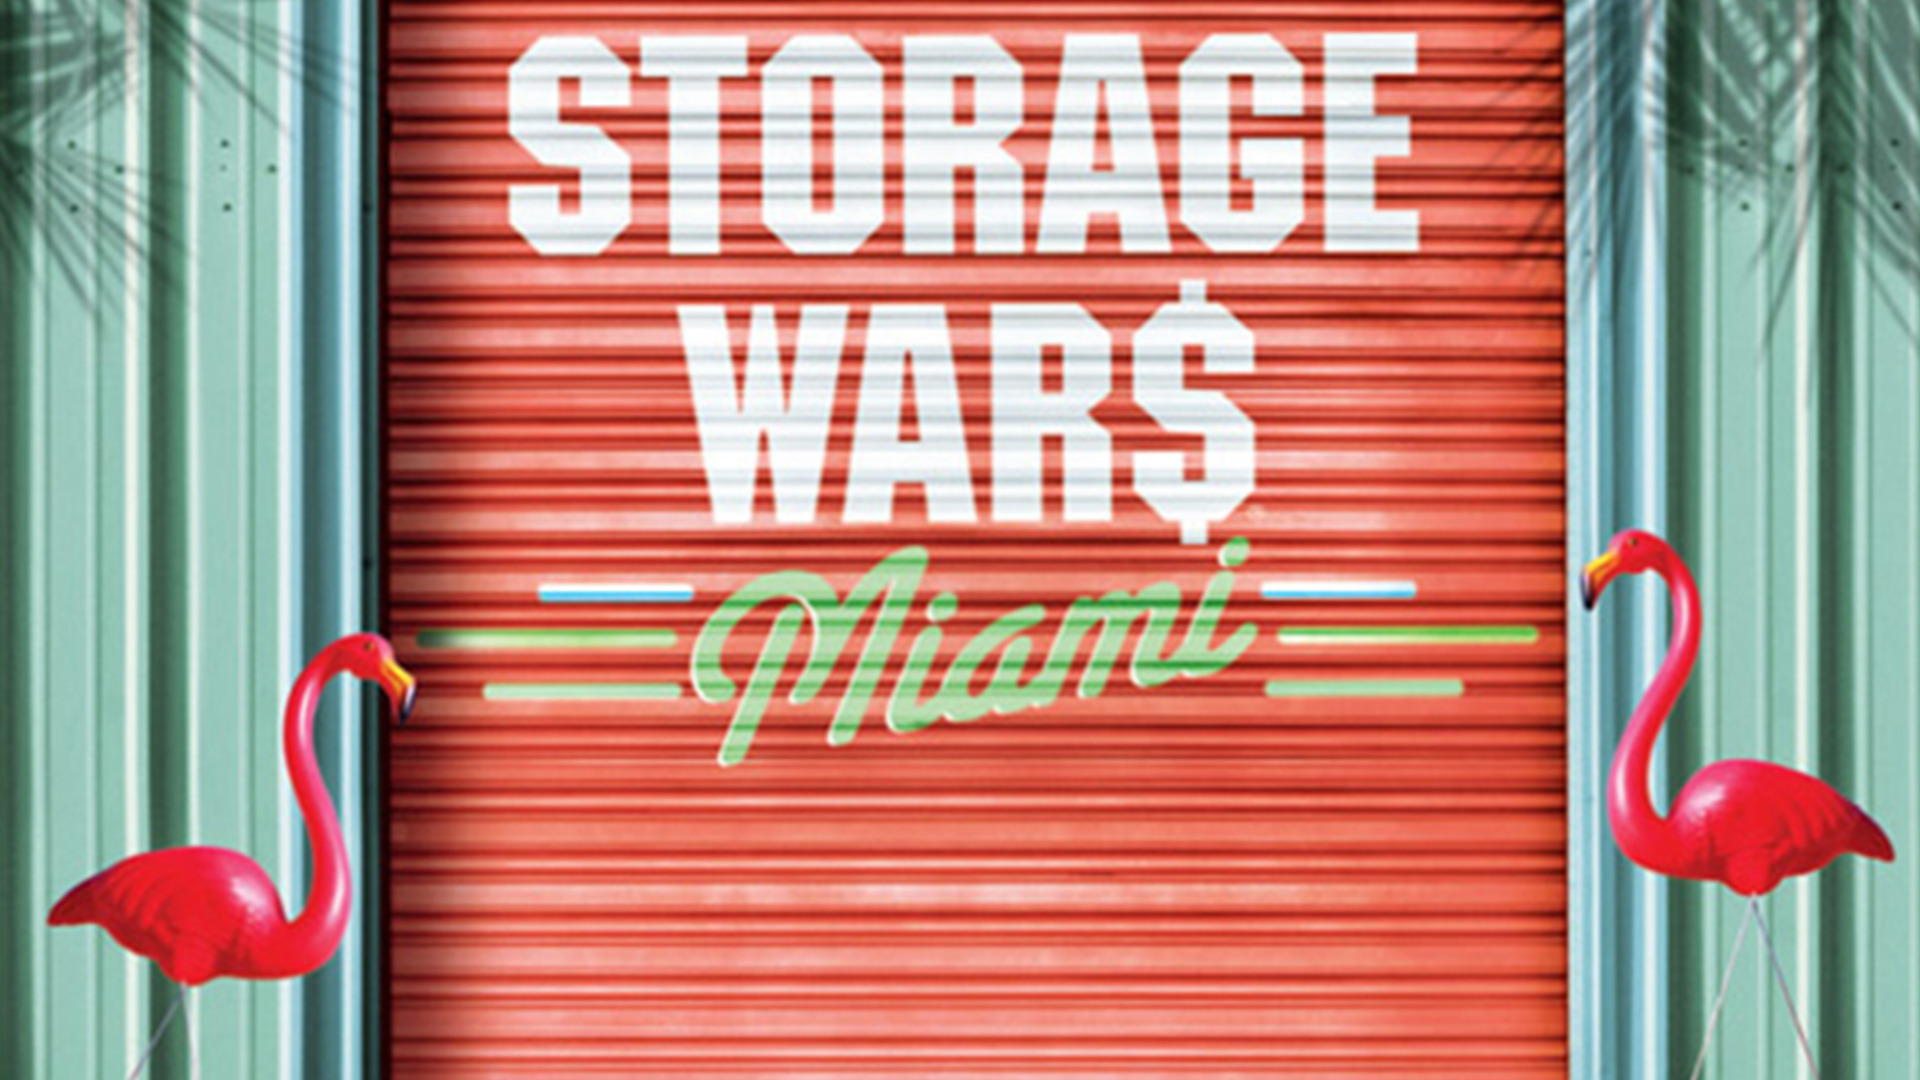 Show Storage Wars: Miami